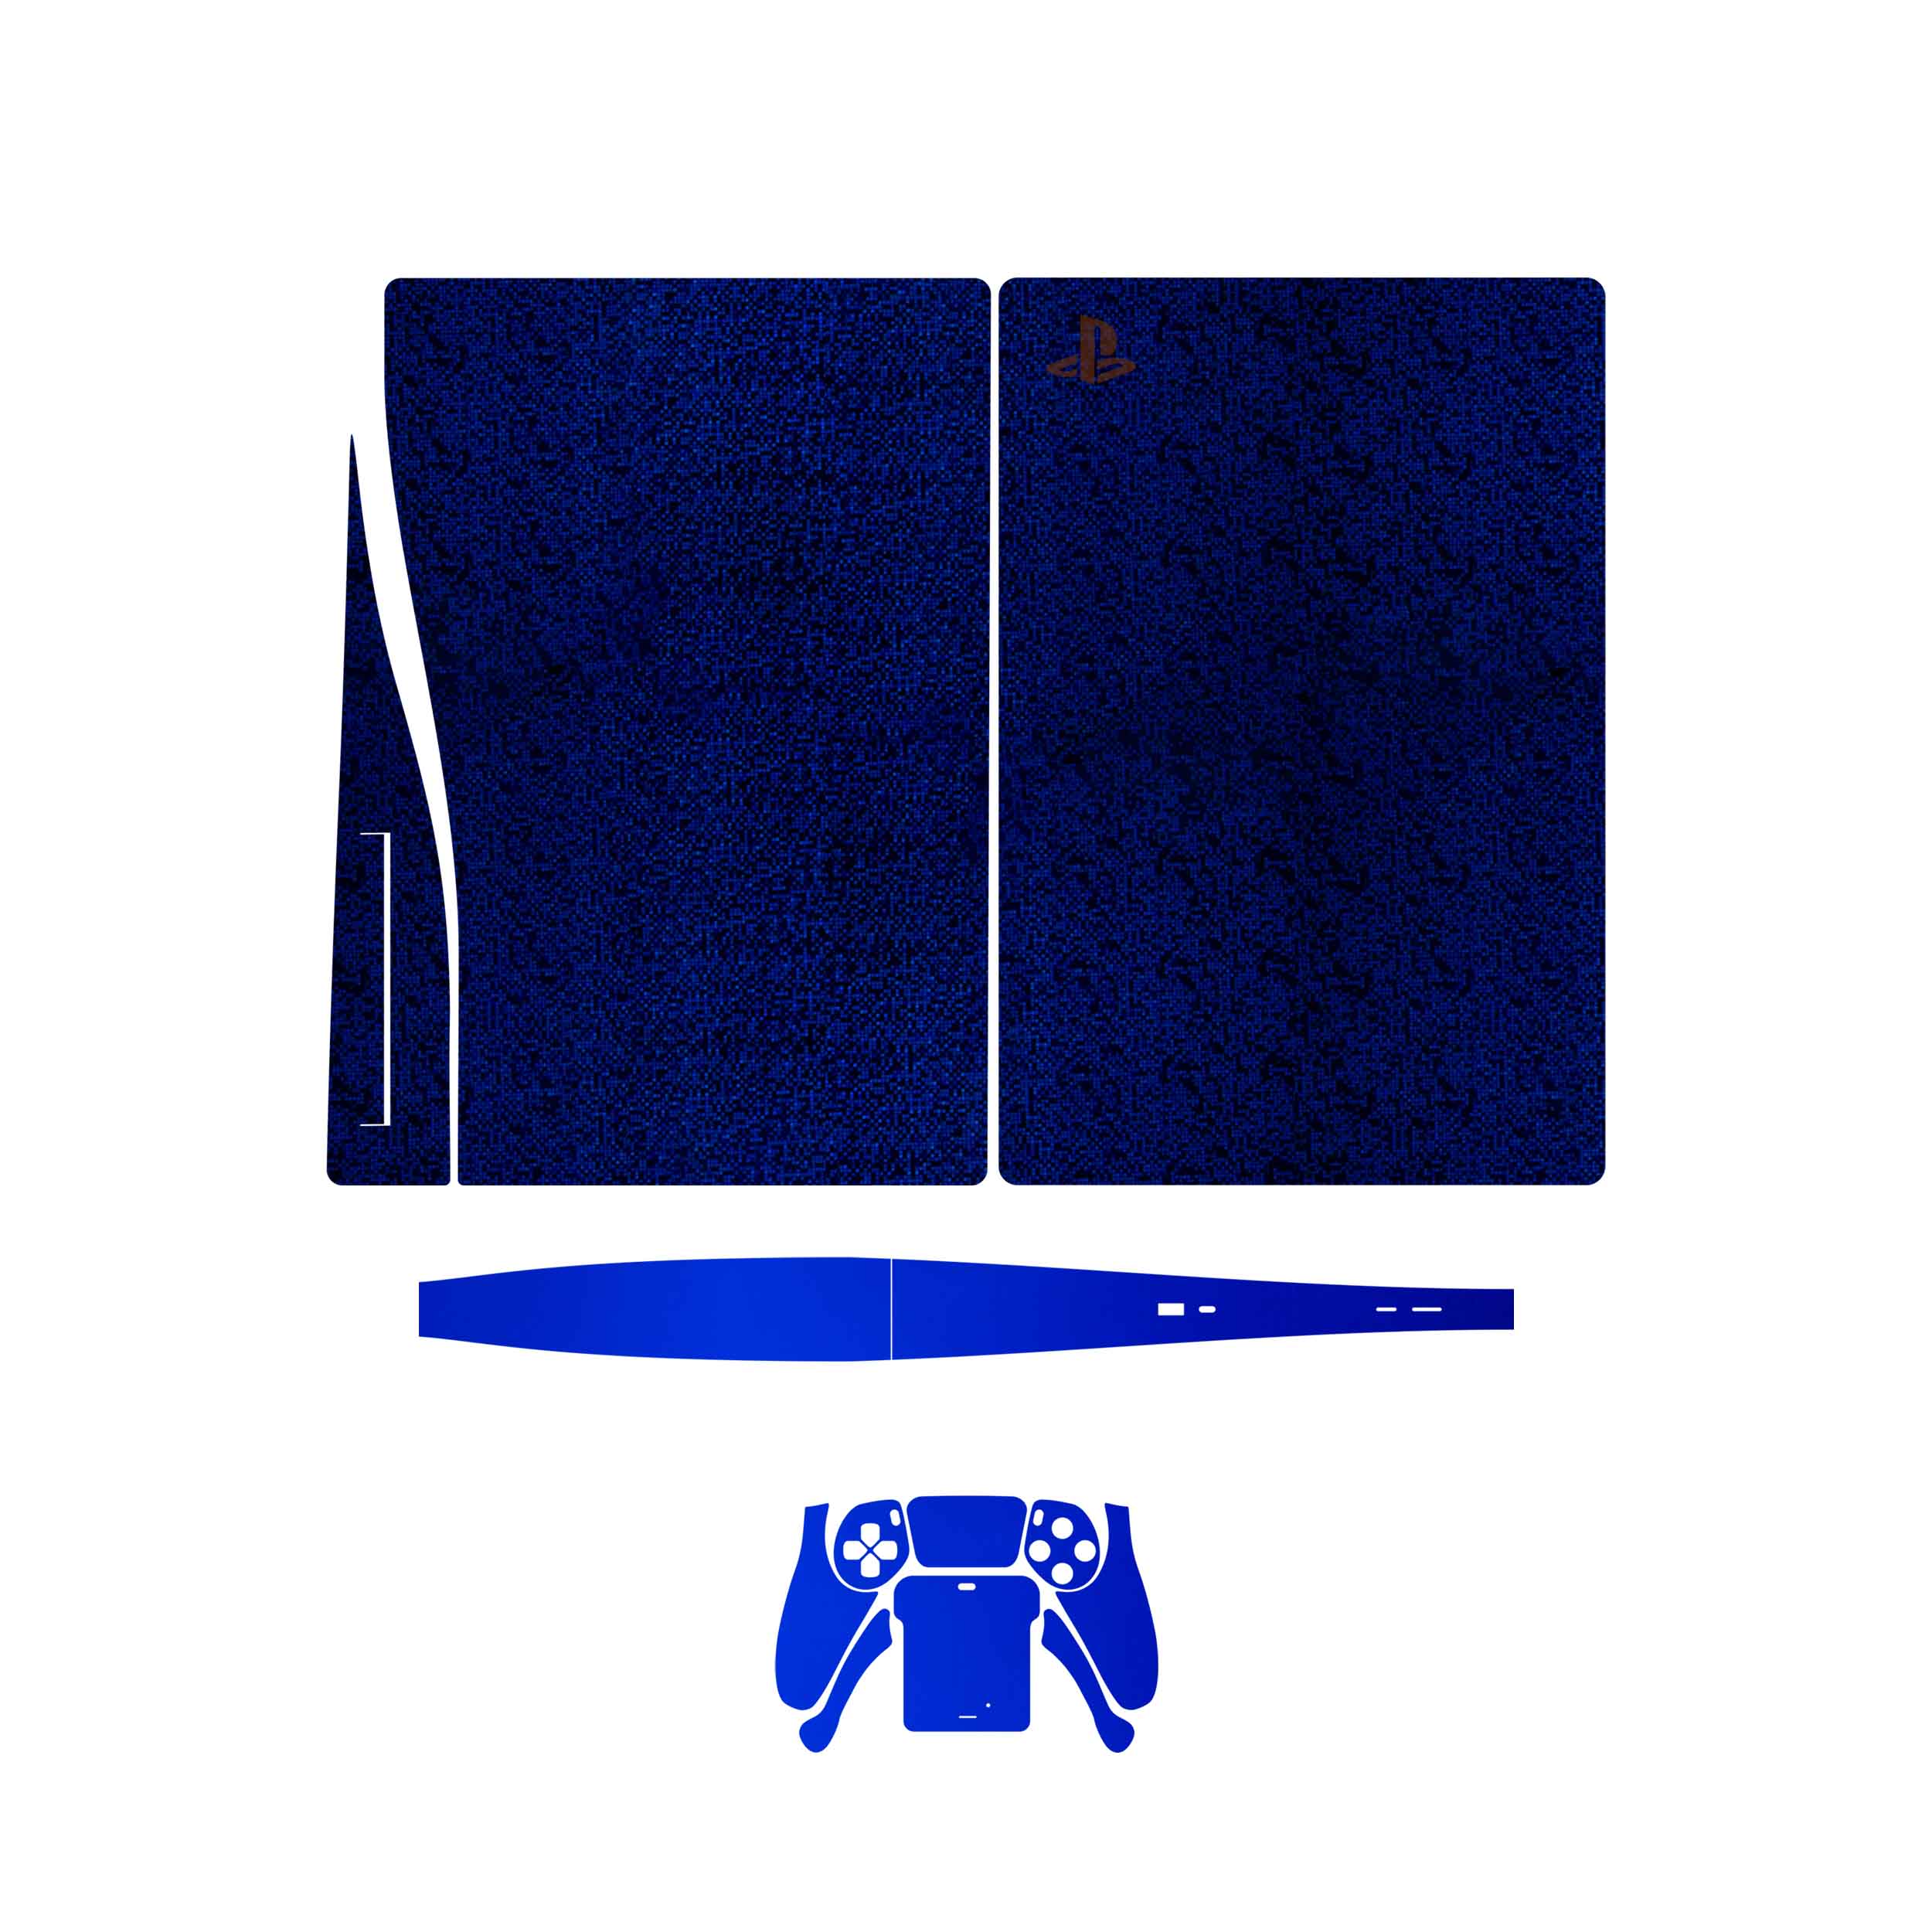 برچسب پوششی ماهوت مدل  Blue_Holographic_Metallic_Blue مناسب برای کنسول بازی PS5